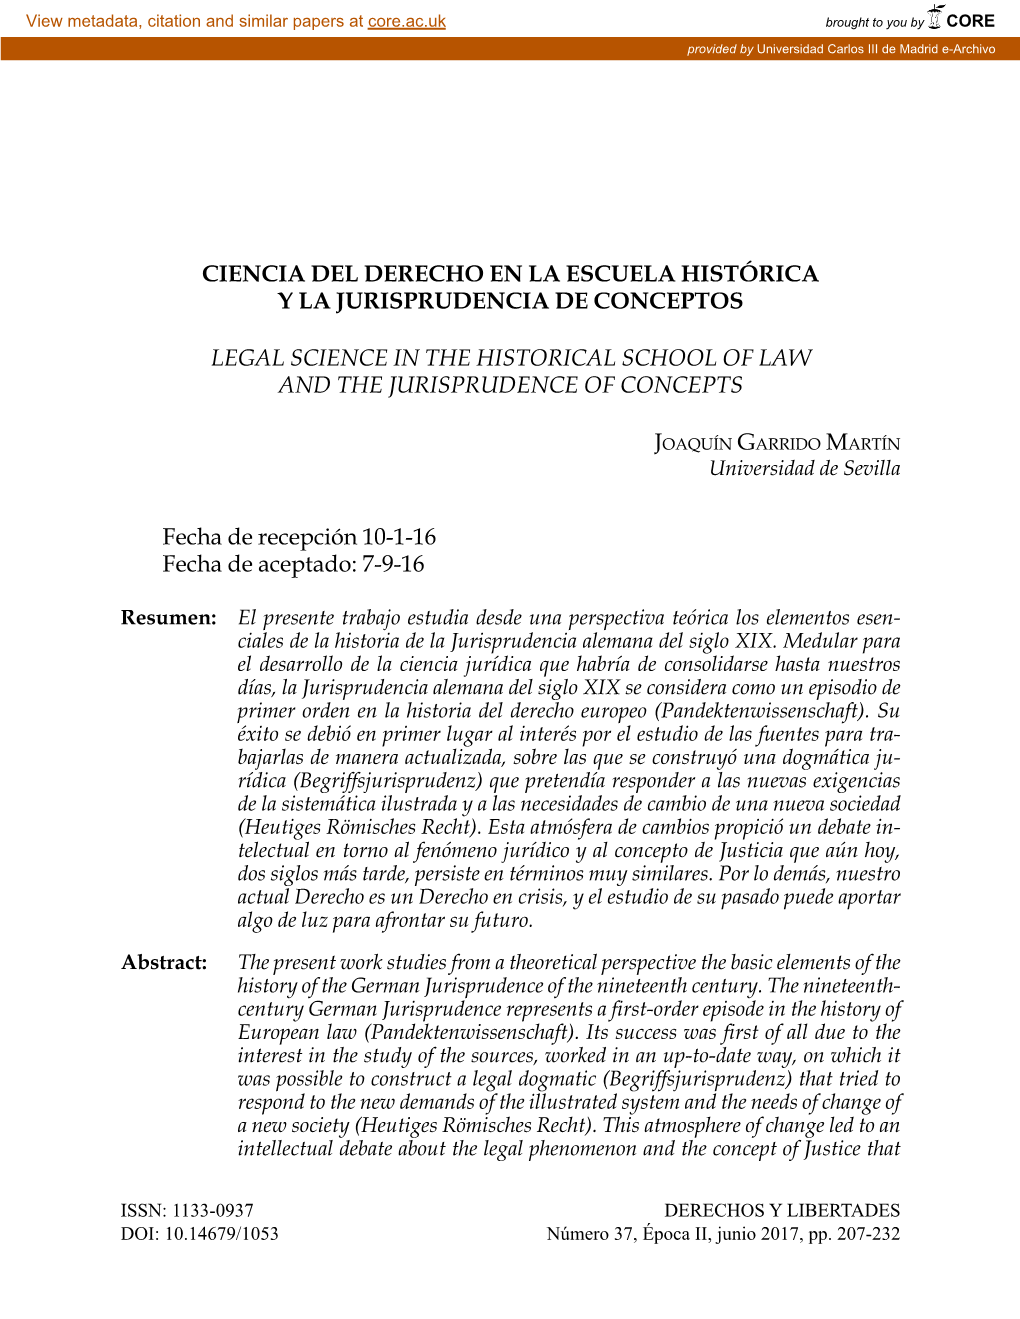 Ciencia Del Derecho En La Escuela Histórica Y La Jurisprudencia De Conceptos 207